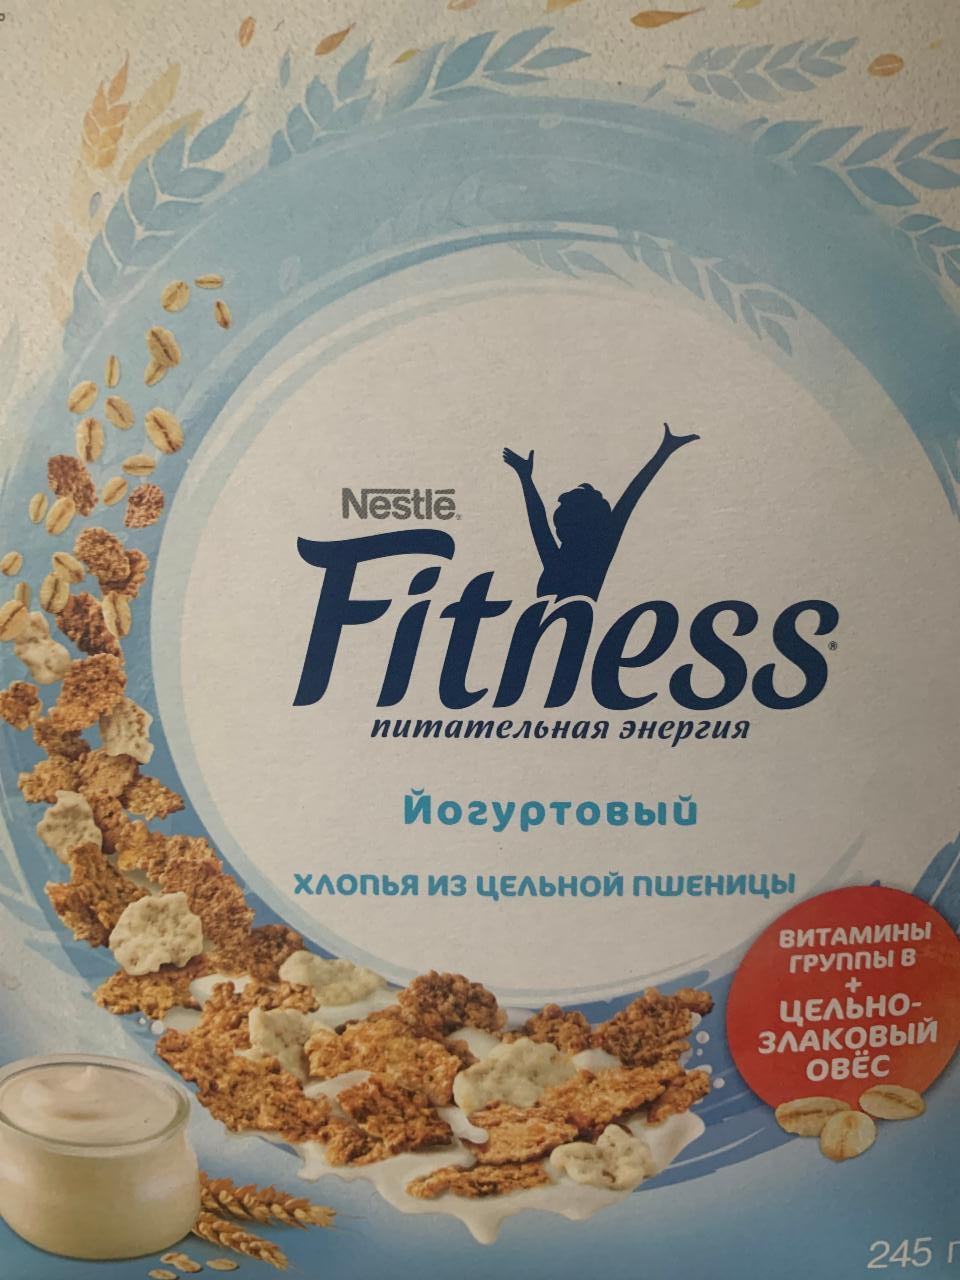 Фото - Готовый завтрак fitness йогуртовый Nestle